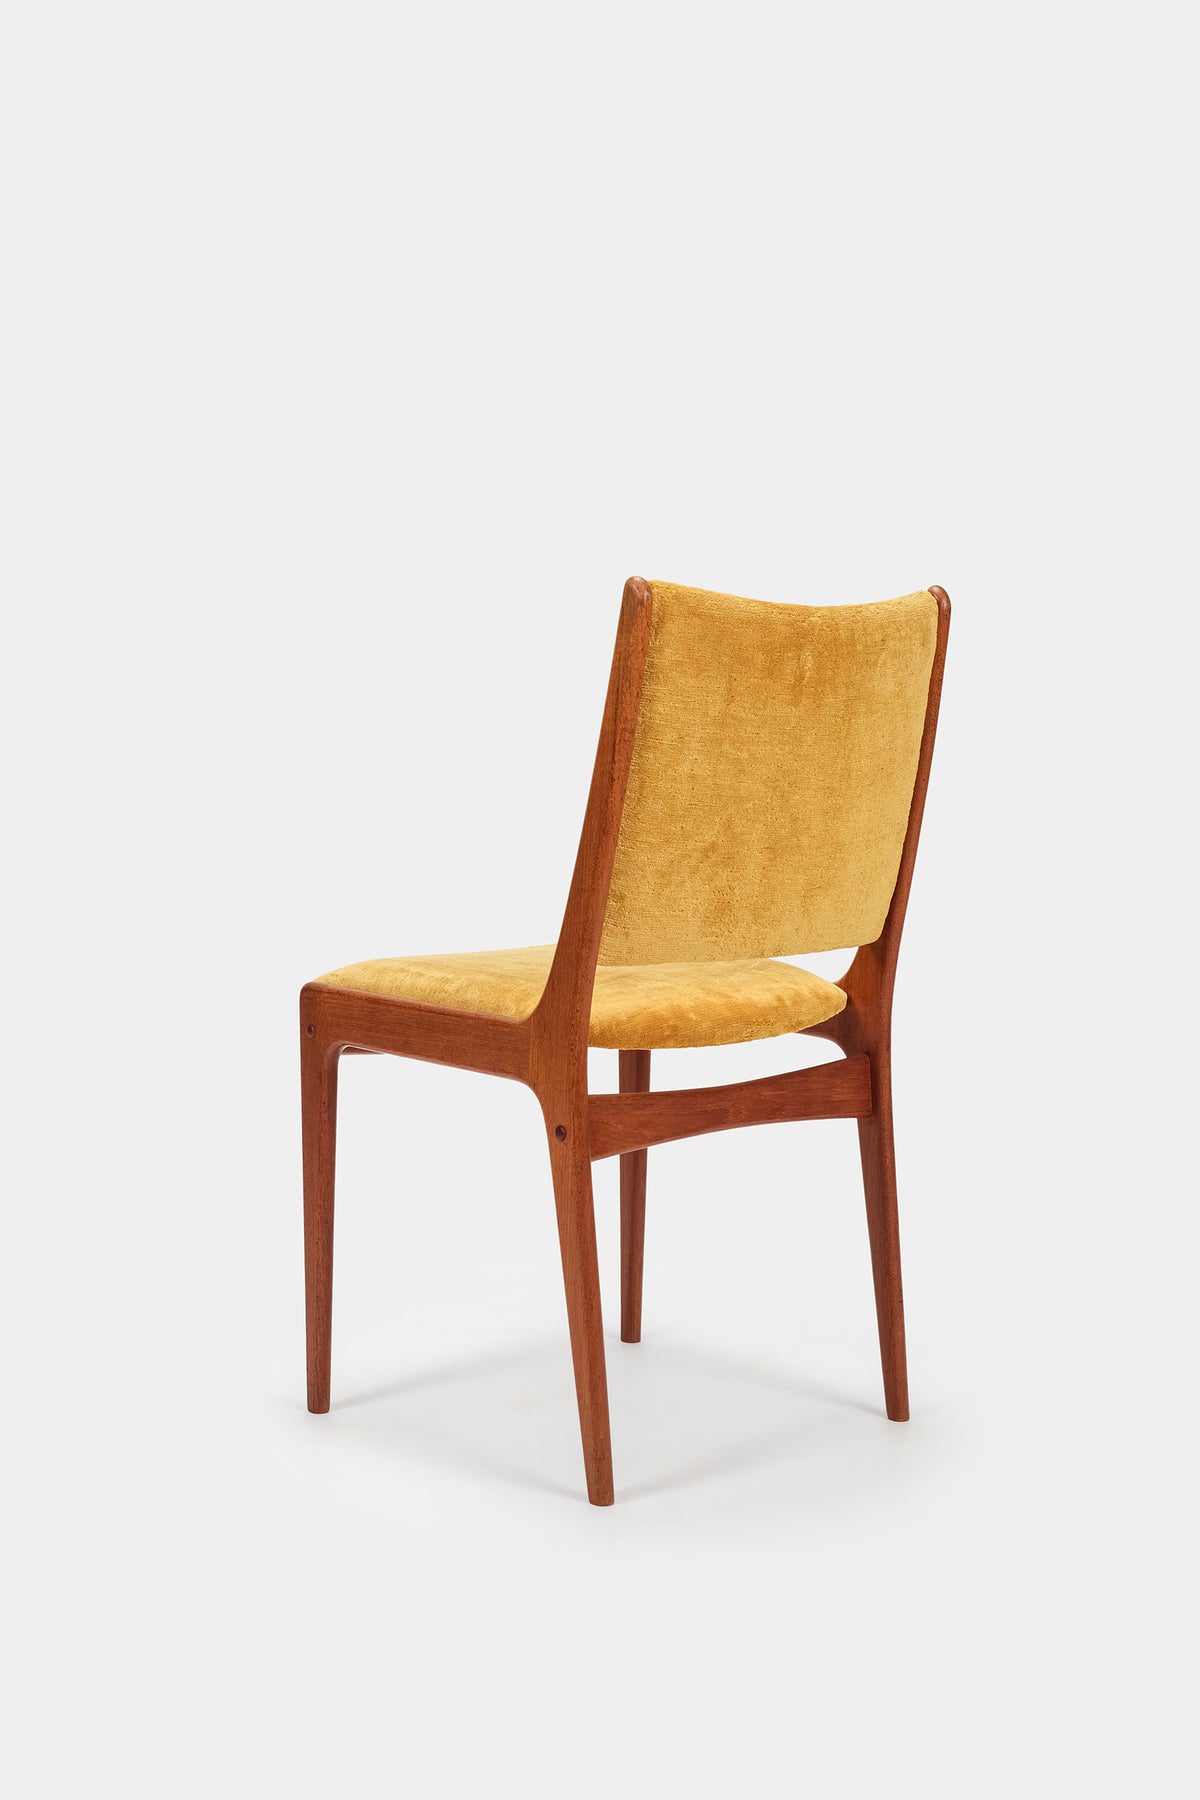 Johannes Andersen, Pair of Chairs, Silkeborg, 60s